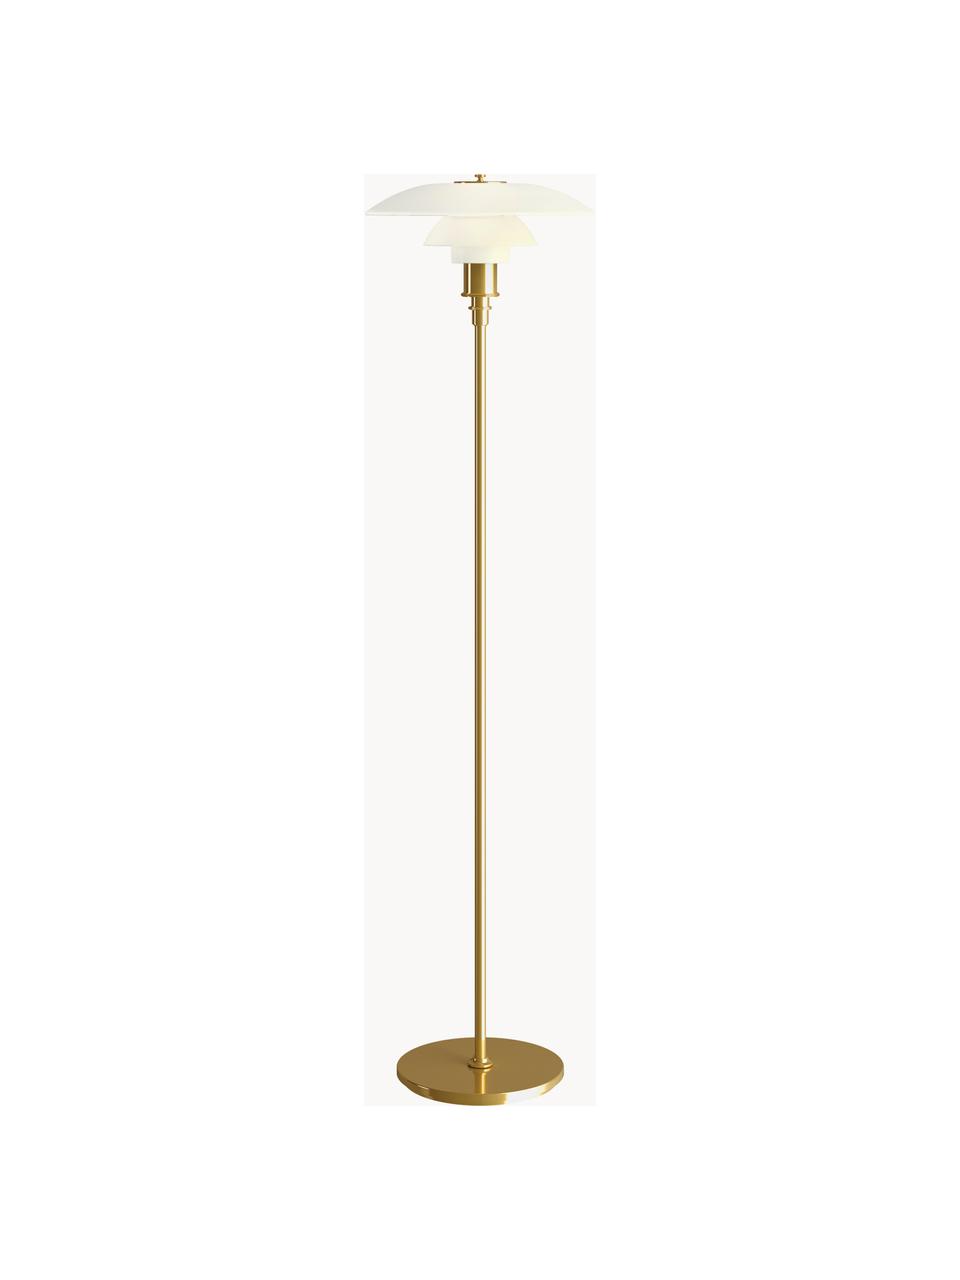 Malá stojací lampa PH 3½-2½, ručně foukaná, Zlatá, bílá, V 130 cm